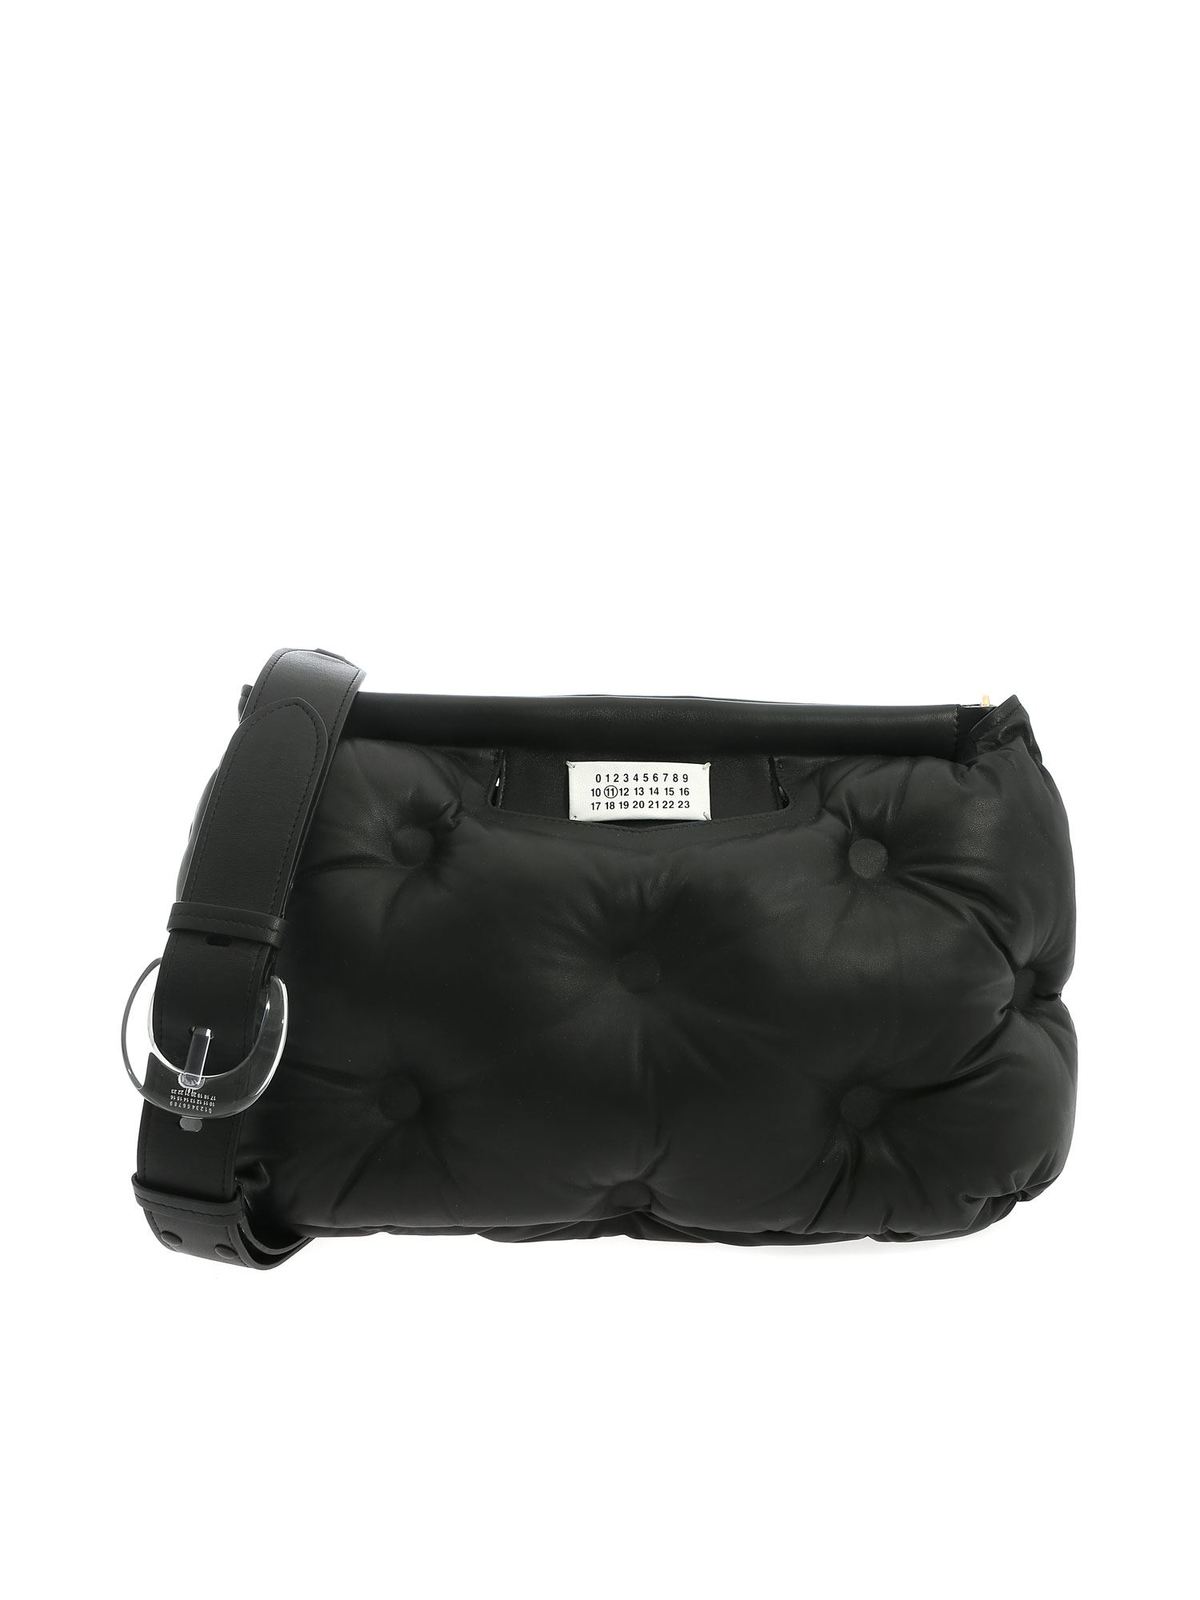 Cross body bags Maison Margiela - Glam Slam Media shoulder bag in black ...